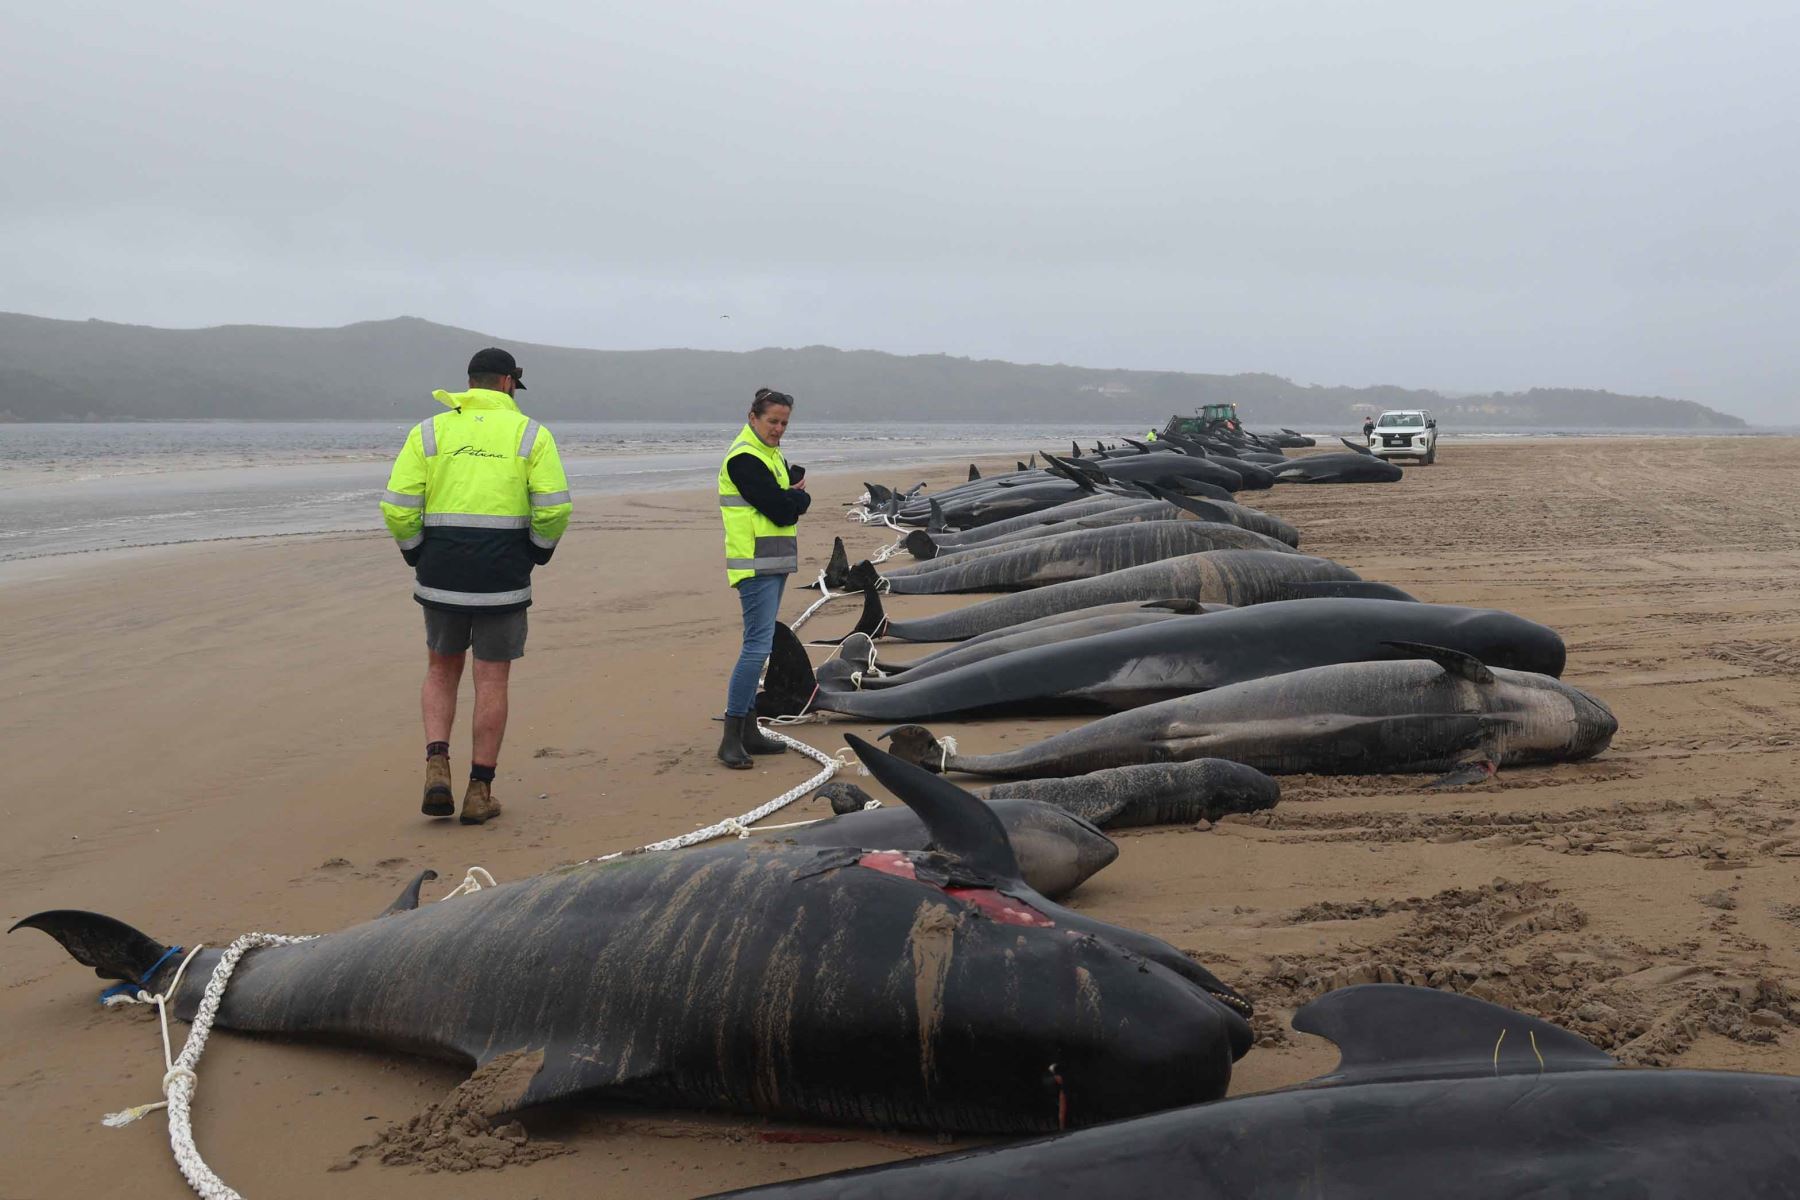 Alrededor de 200 ballenas piloto murieron en una playa de la bahía de Macquarie, en el oeste de la isla australiana de Tasmania, y 35 fueron rescatadas con vida después del varamiento masivo ocurrido la víspera en este remoto lugar, informaron este jueves las autoridades del país oceánico